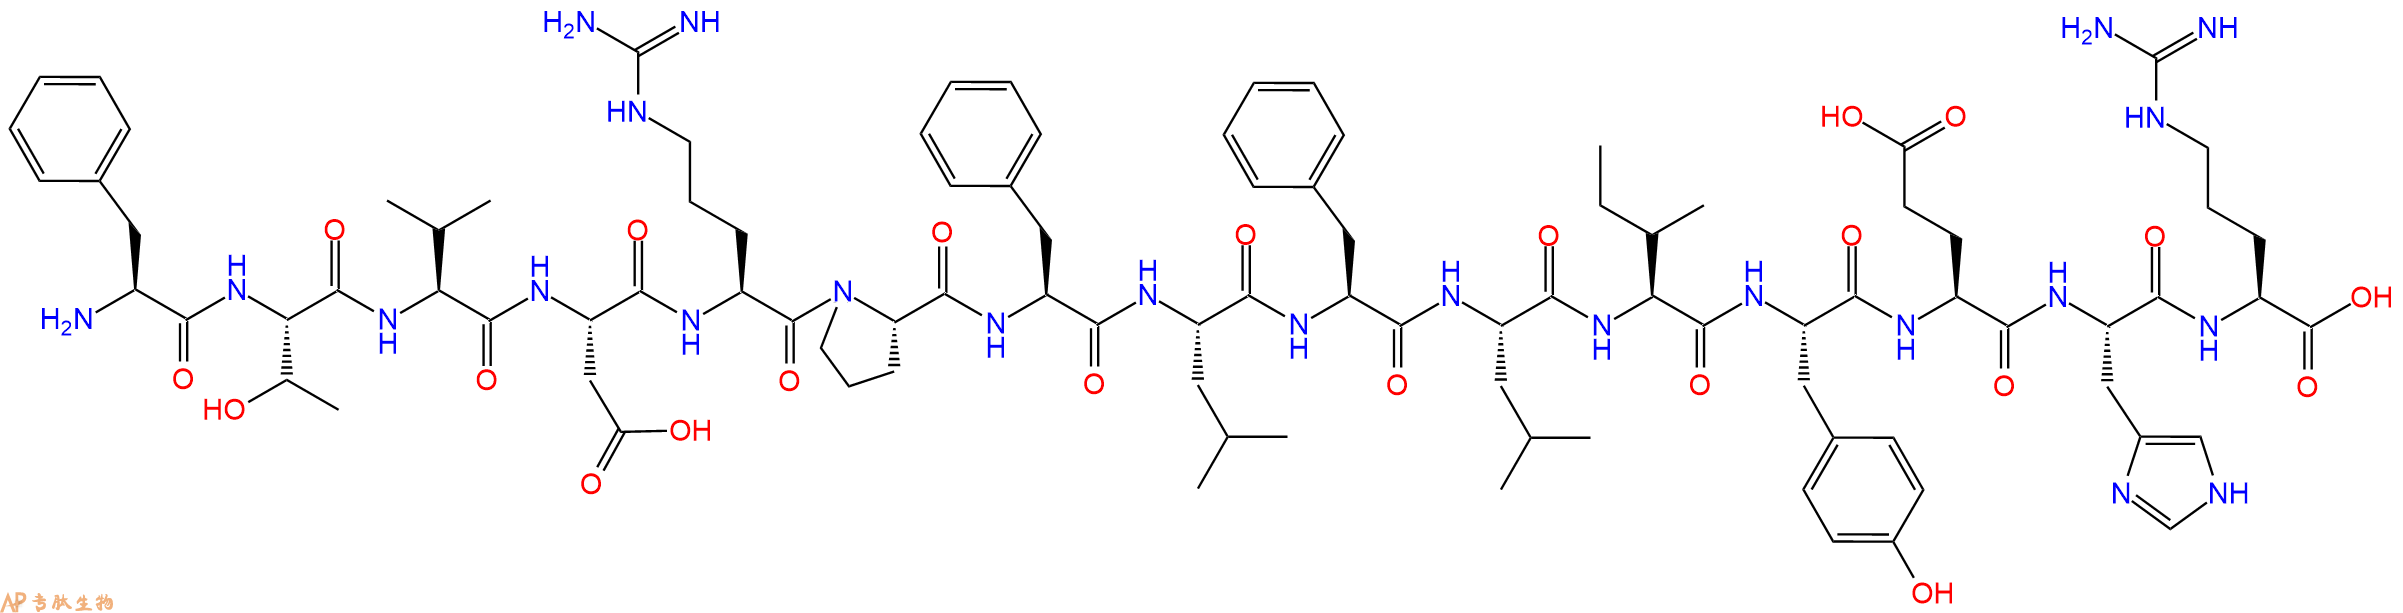 专肽生物产品凝血酶抑制剂：肝素辅助因子Ⅱ前体 heparin cofactor II precursor (SERPIND1) fragment [Homo sapiens]